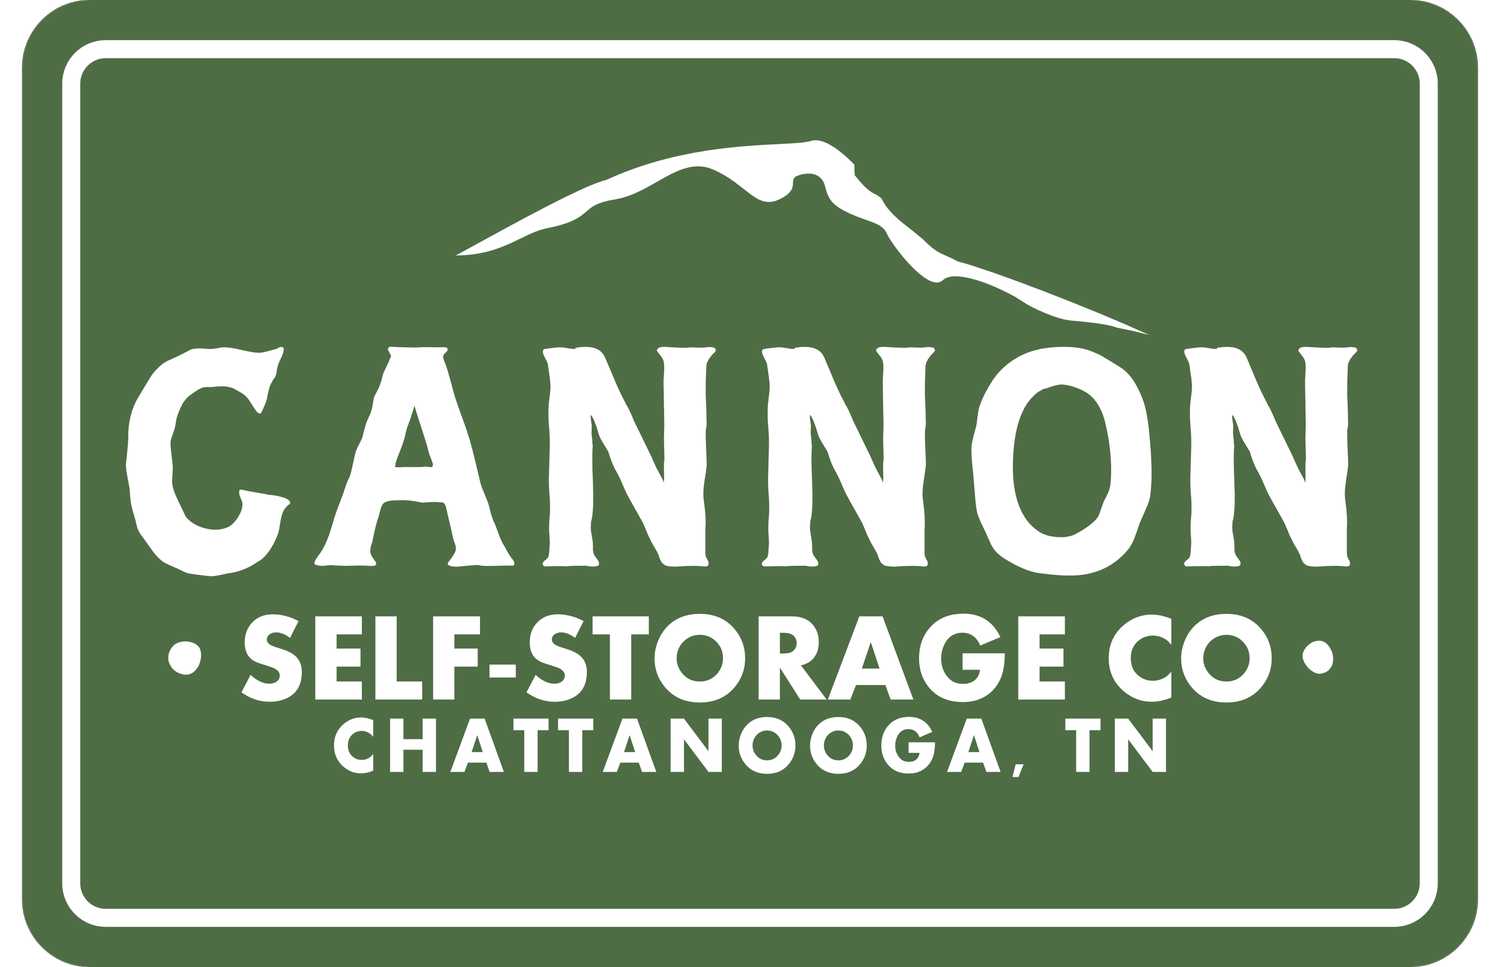 Cannon Self-Storage Co.